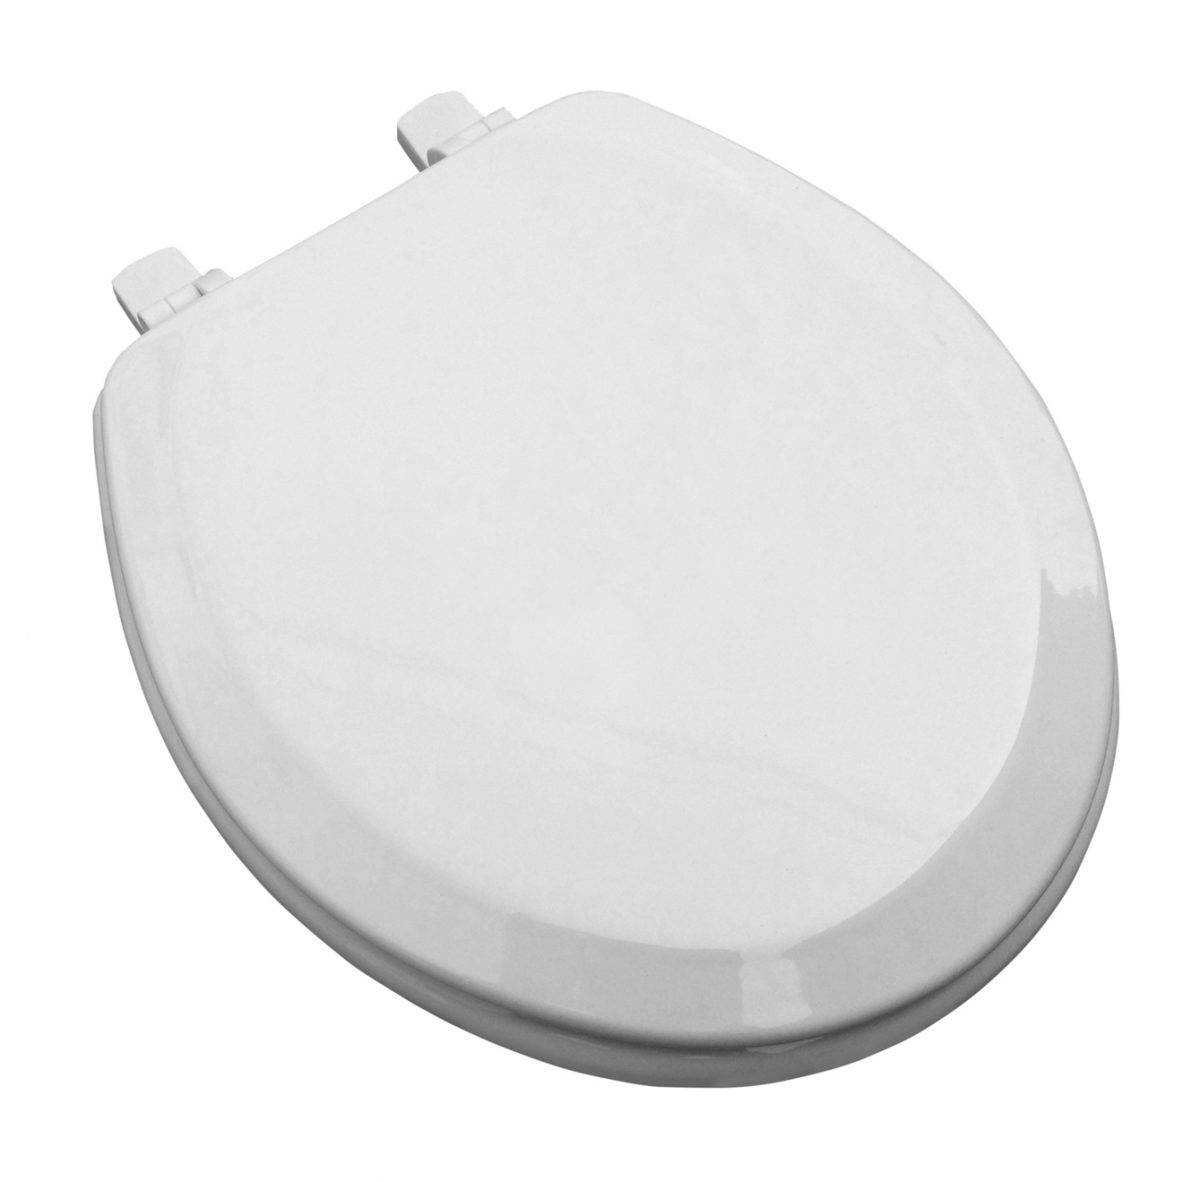 White MDF Round Beveled edge toilet seat.